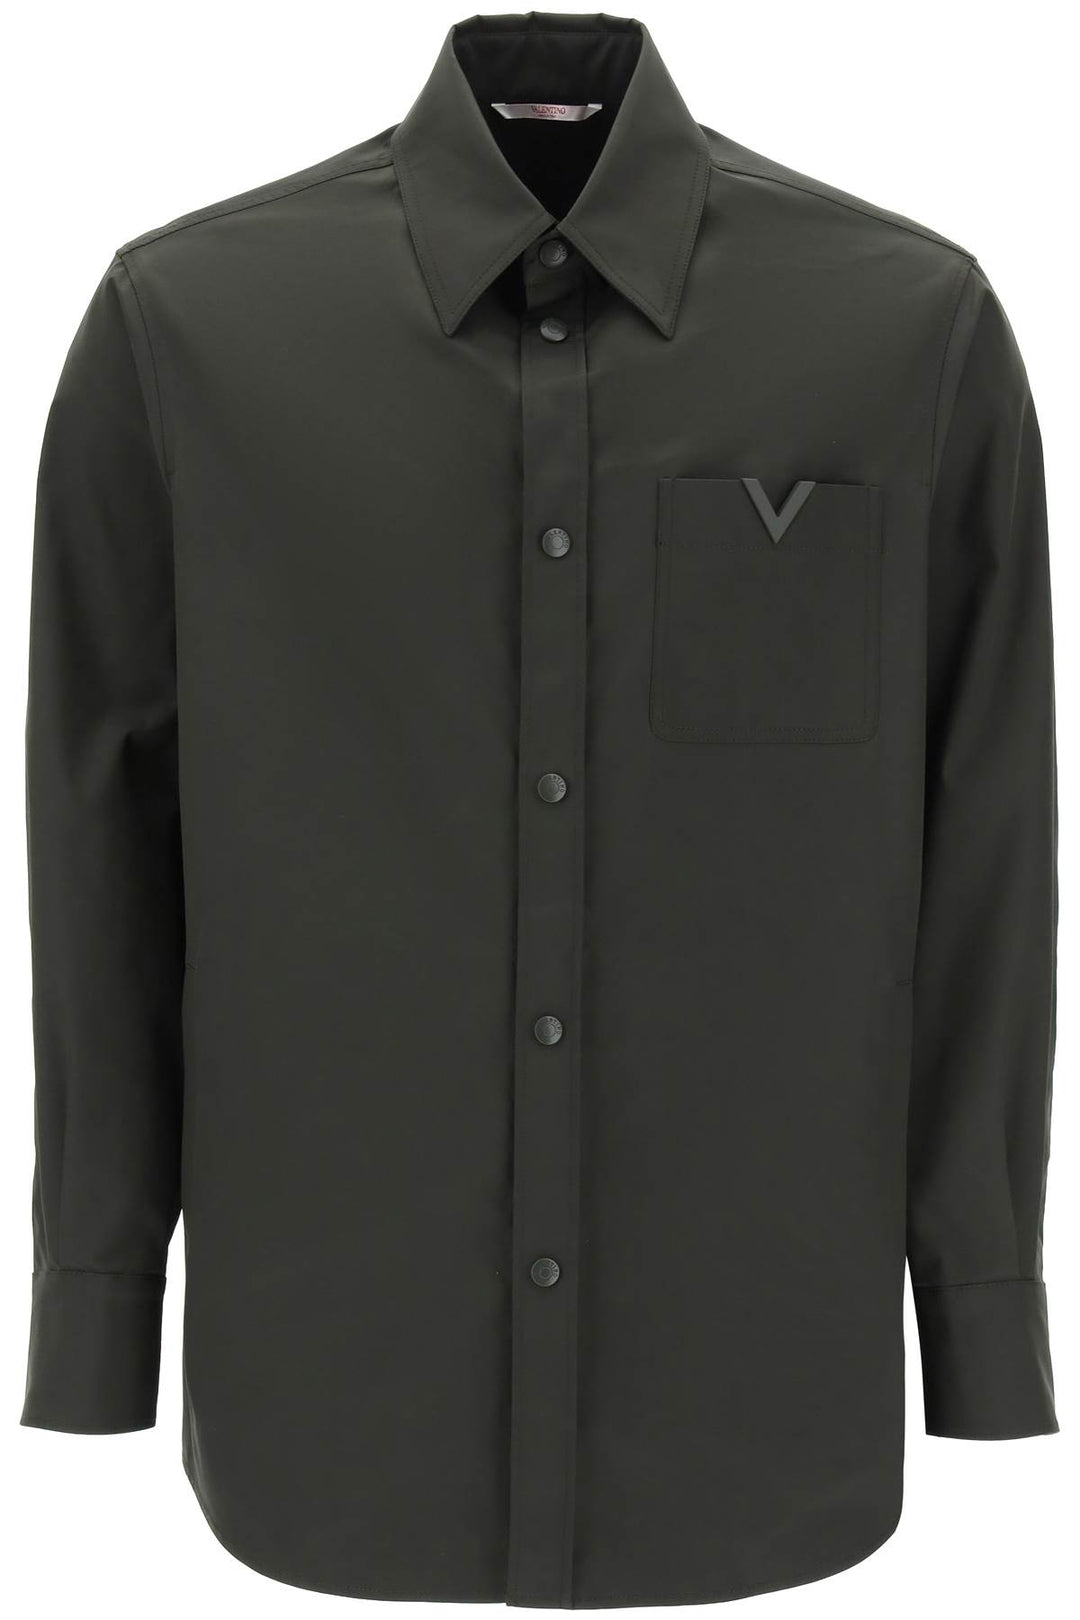 Valentino Garavani Snap Up Overshirt In Stretch Nylon   Khaki